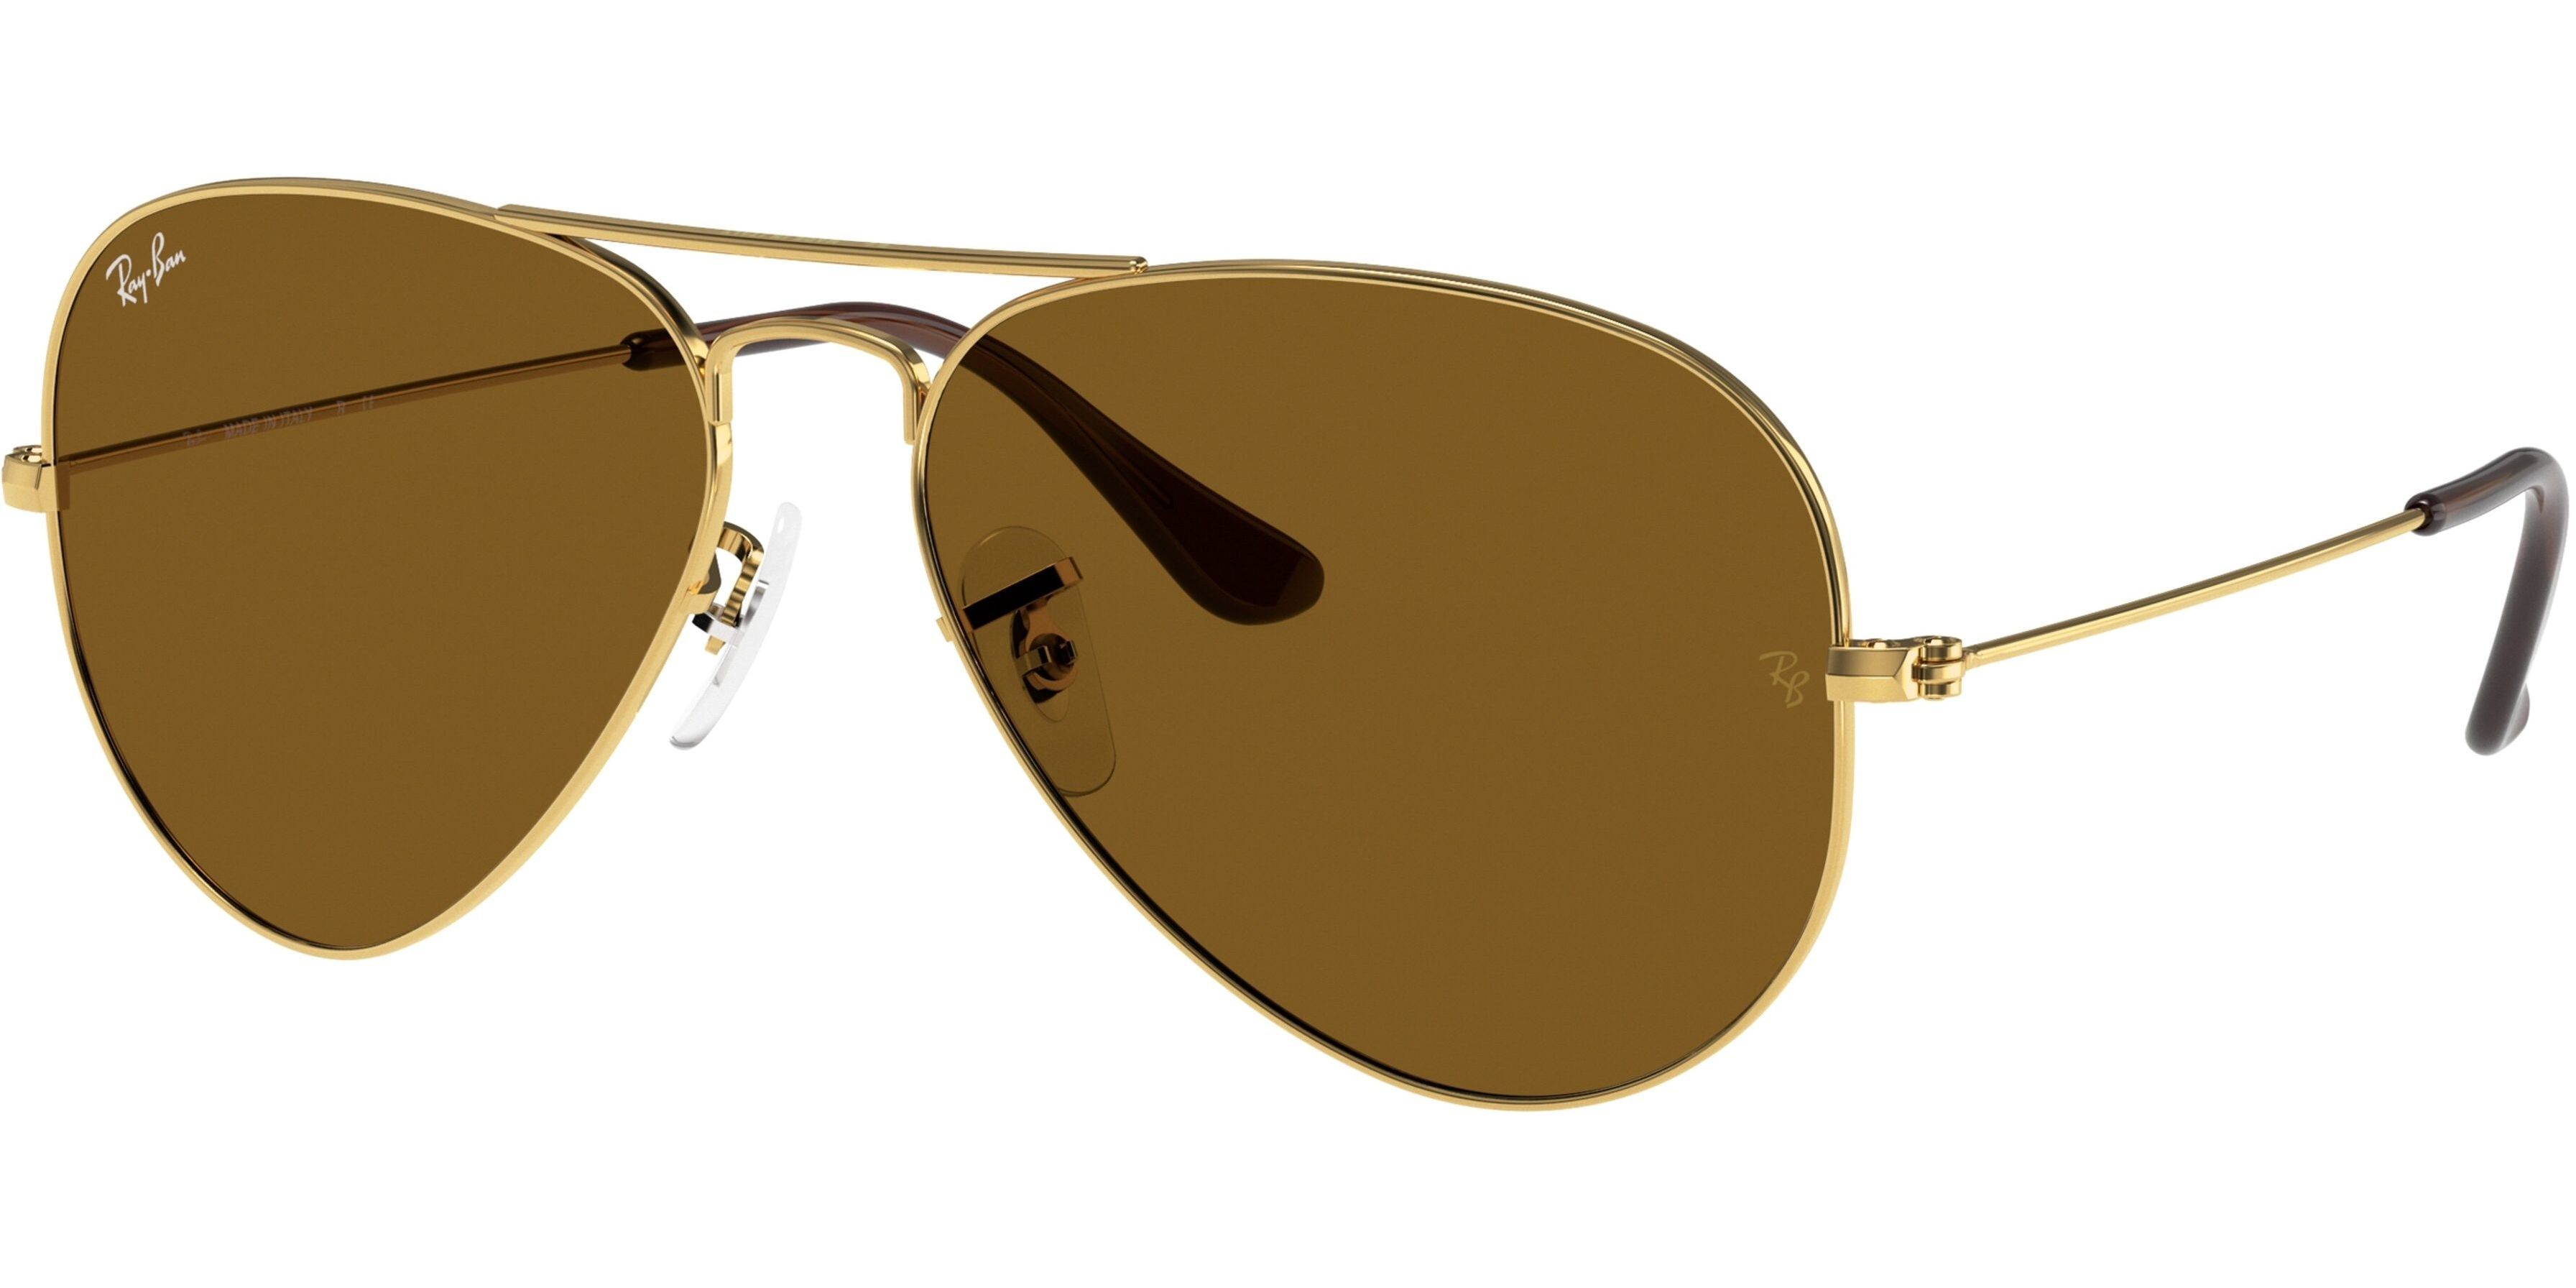 Sluneční brýle Ray-Ban® model 3025, barva obruby zlatá, čočka hnědá, kód barevné varianty 00133. 